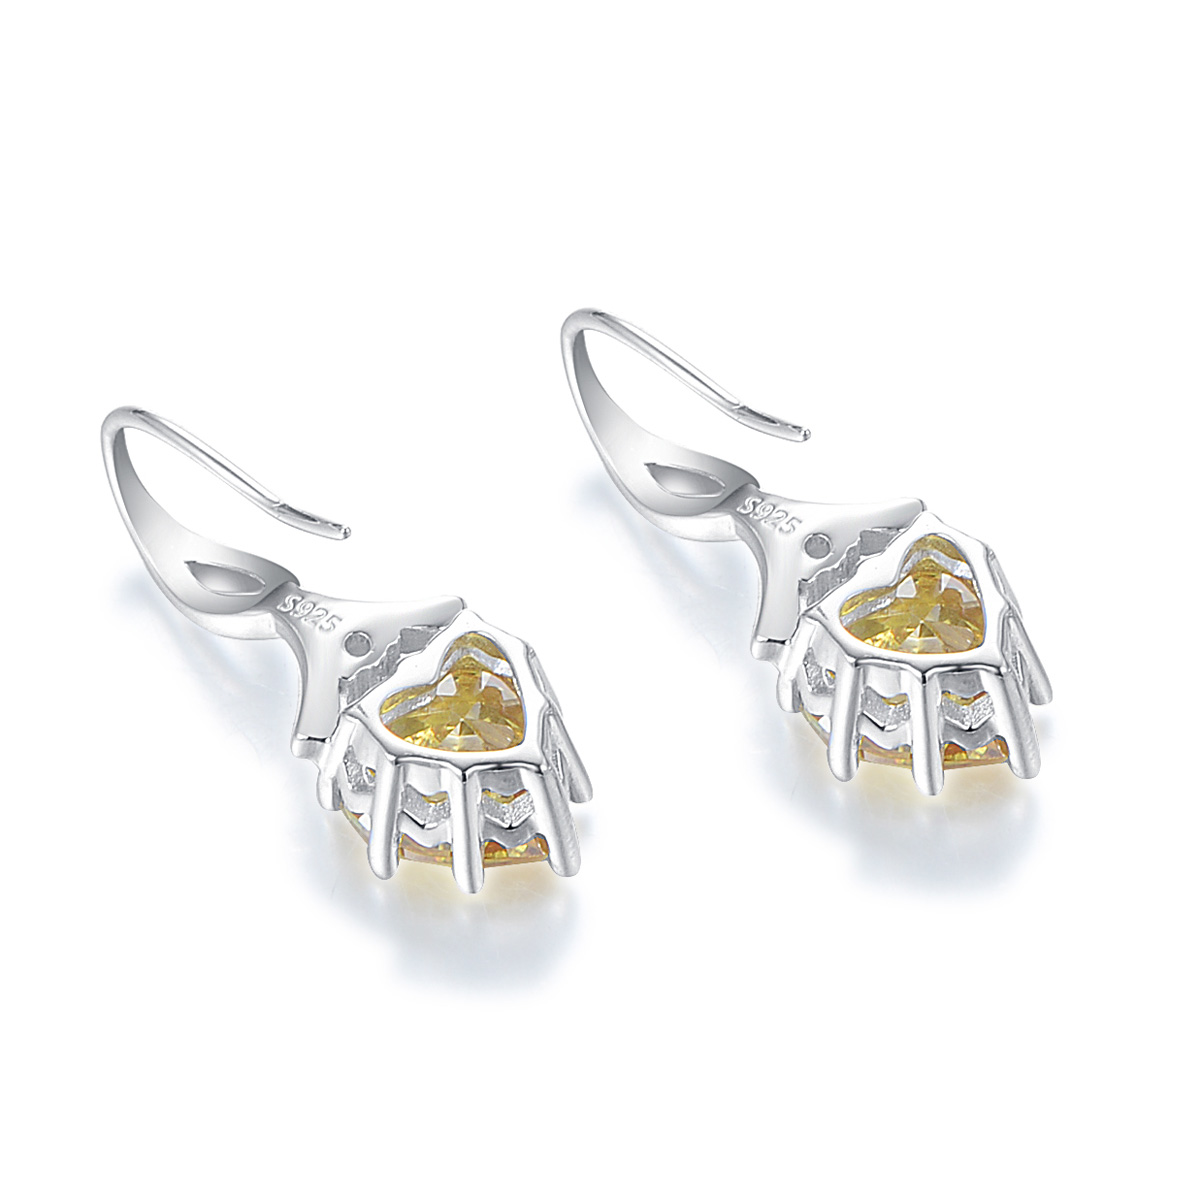 November birthstone heart earrings